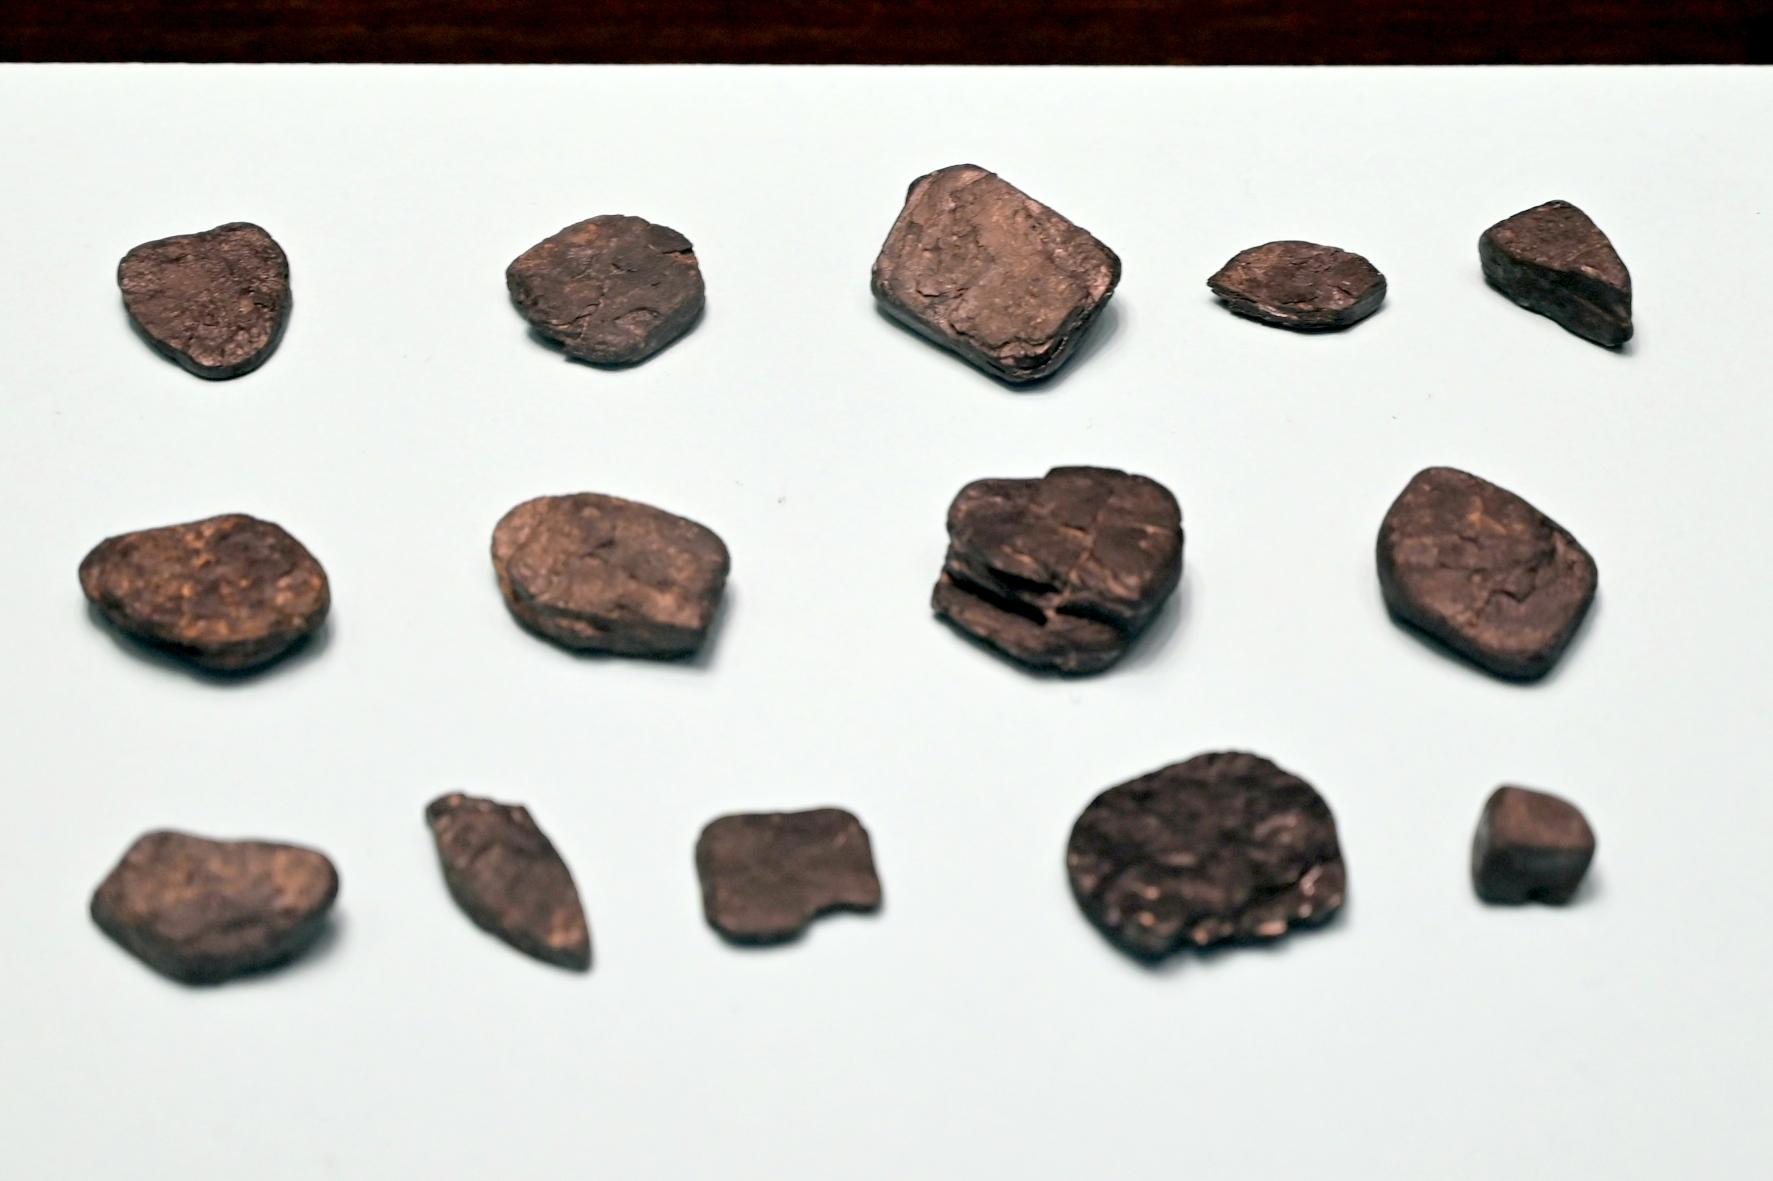 Braunkohleobjekte, 11000 v. Chr.